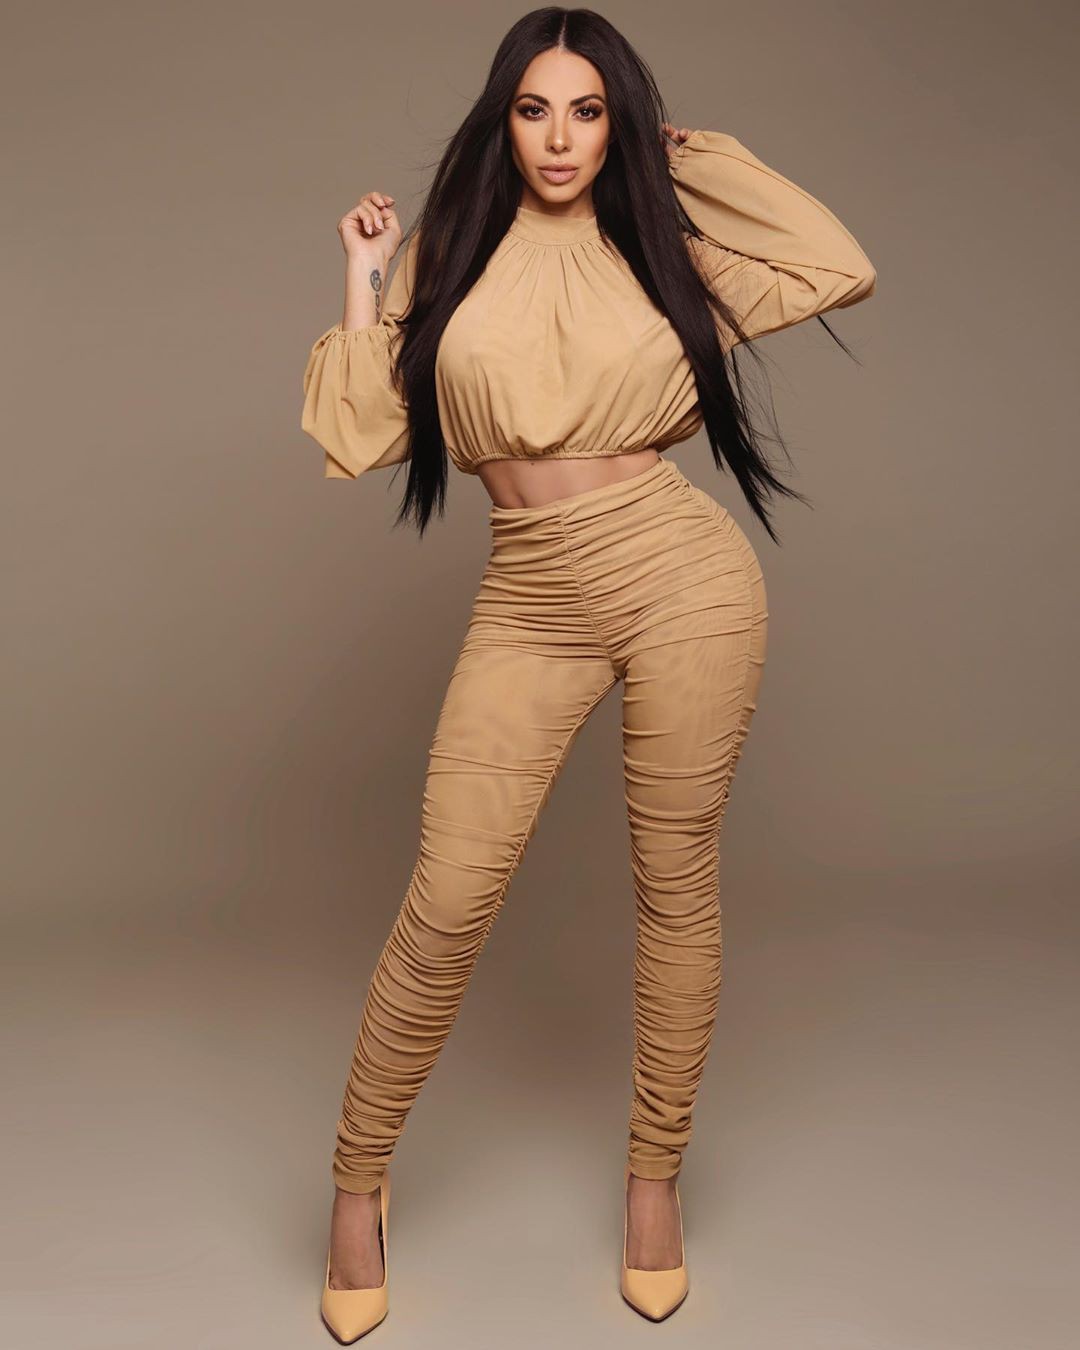 Ideas brillantes de atuendos sobre la modelo de moda, Jimena Sanchez: vestido sin espalda,  kim kardashian,  Fotografía de moda,  Modelos calientes de Instagram  